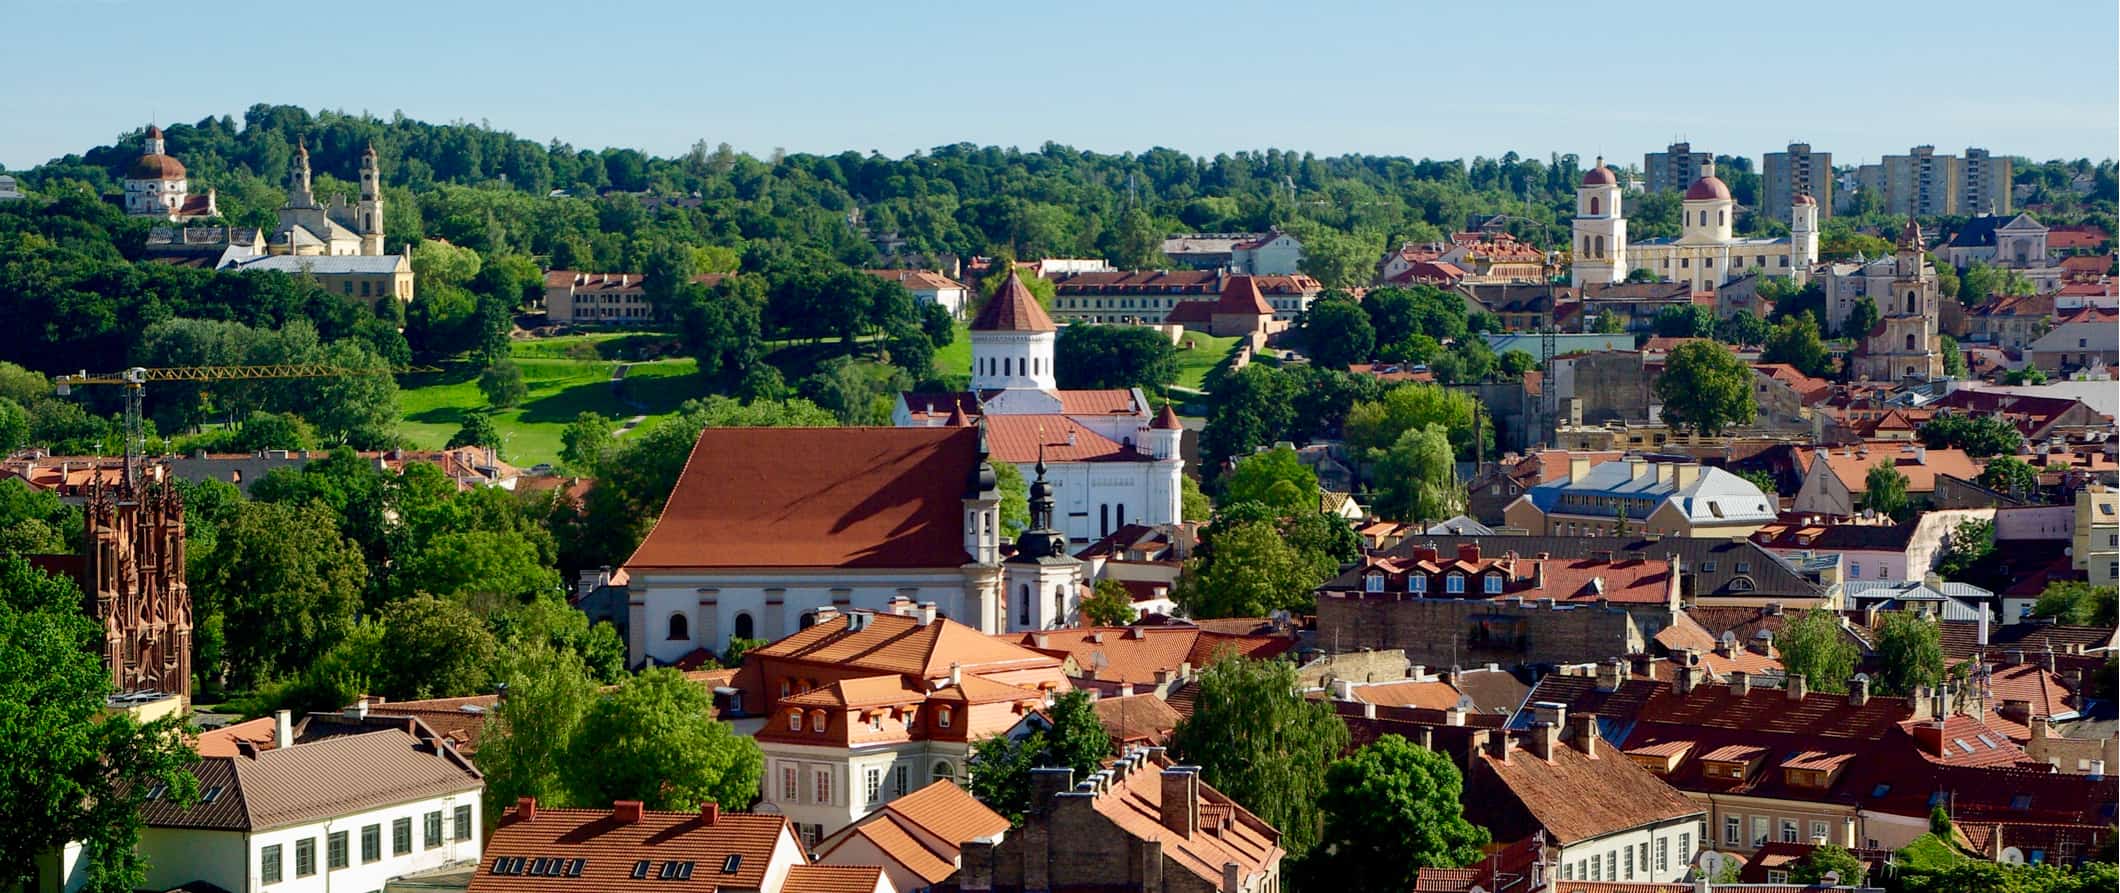 Edifícios históricos cercados por magníficas florestas verdes na Lituânia em um dia ensolarado